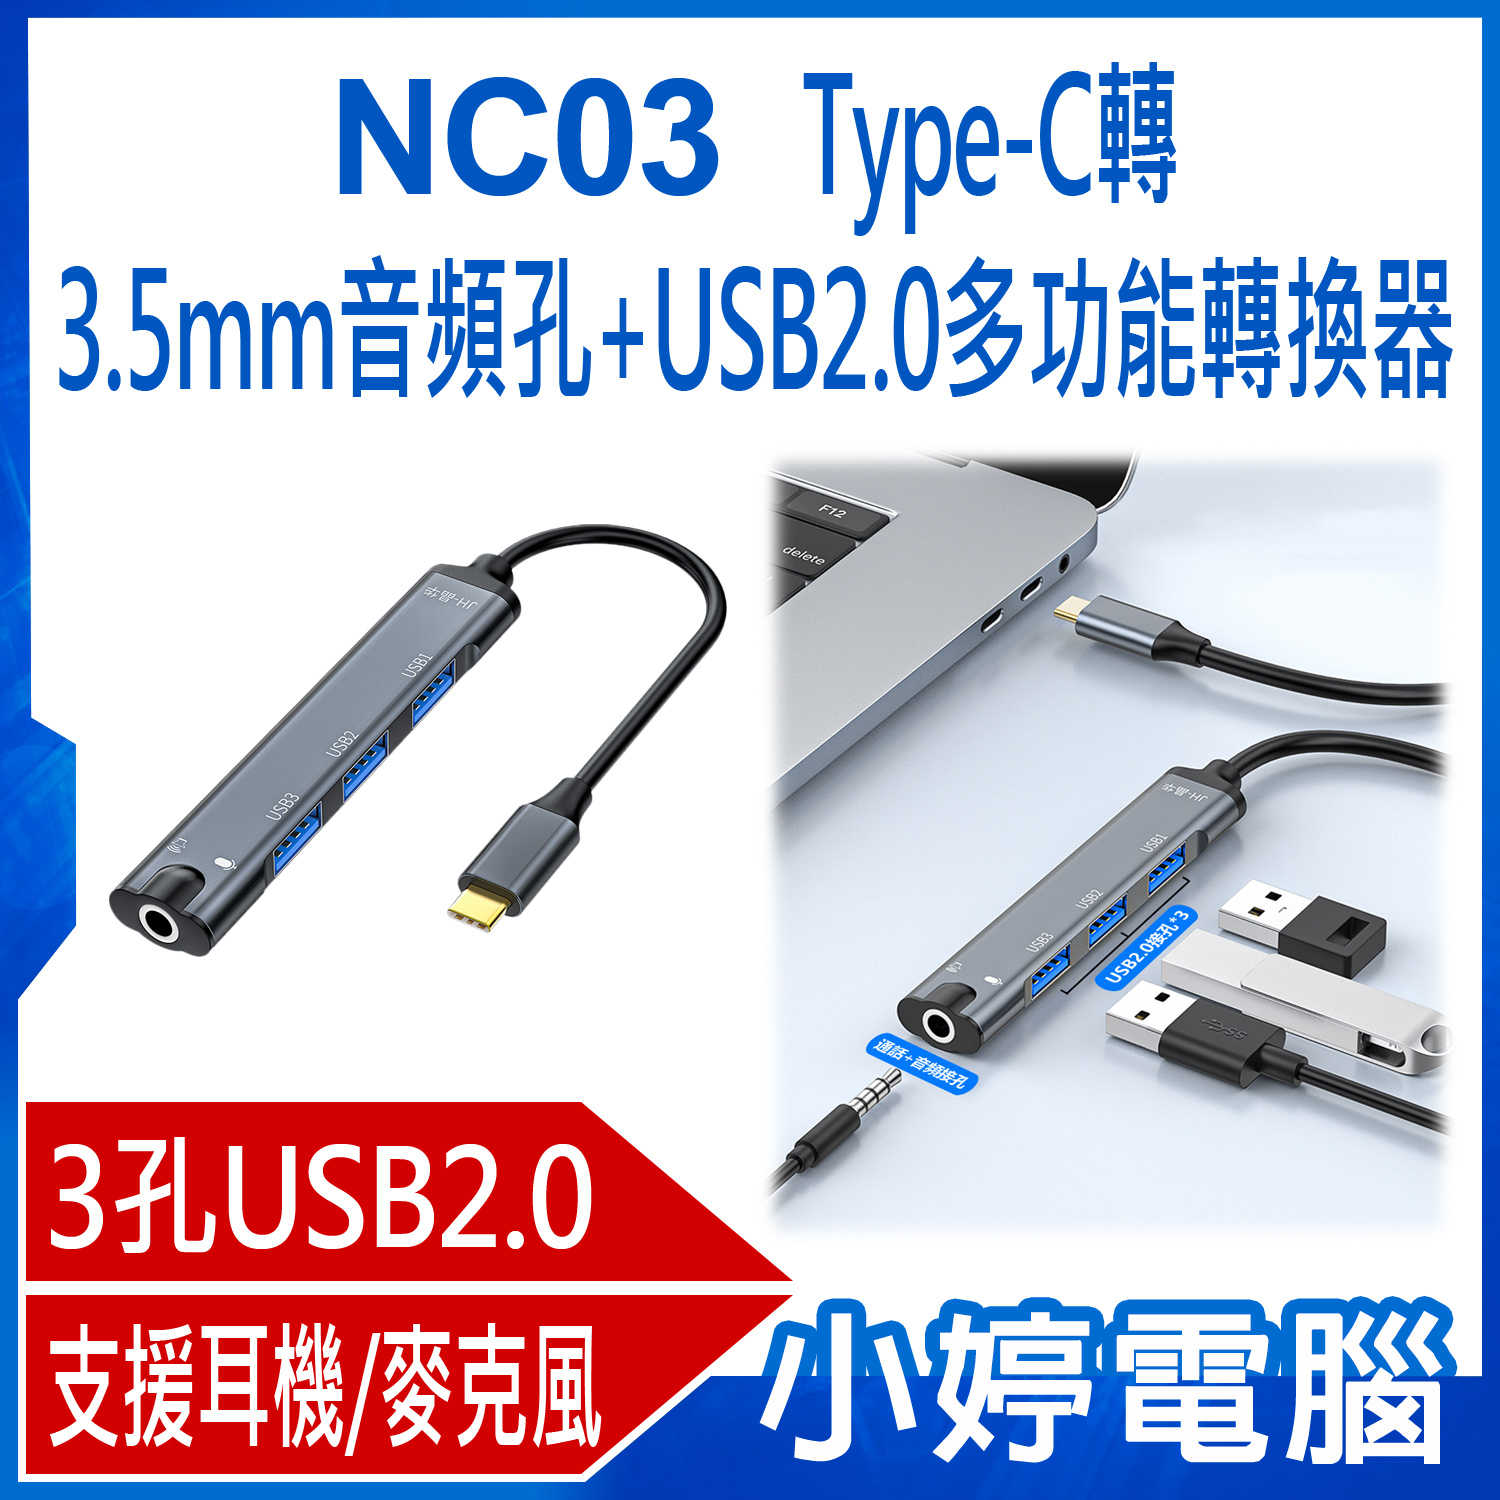 【小婷電腦】NC03 Type-C轉3.5mm音頻孔+USB2.0多功能轉換器 HUB 音效卡 3孔USB